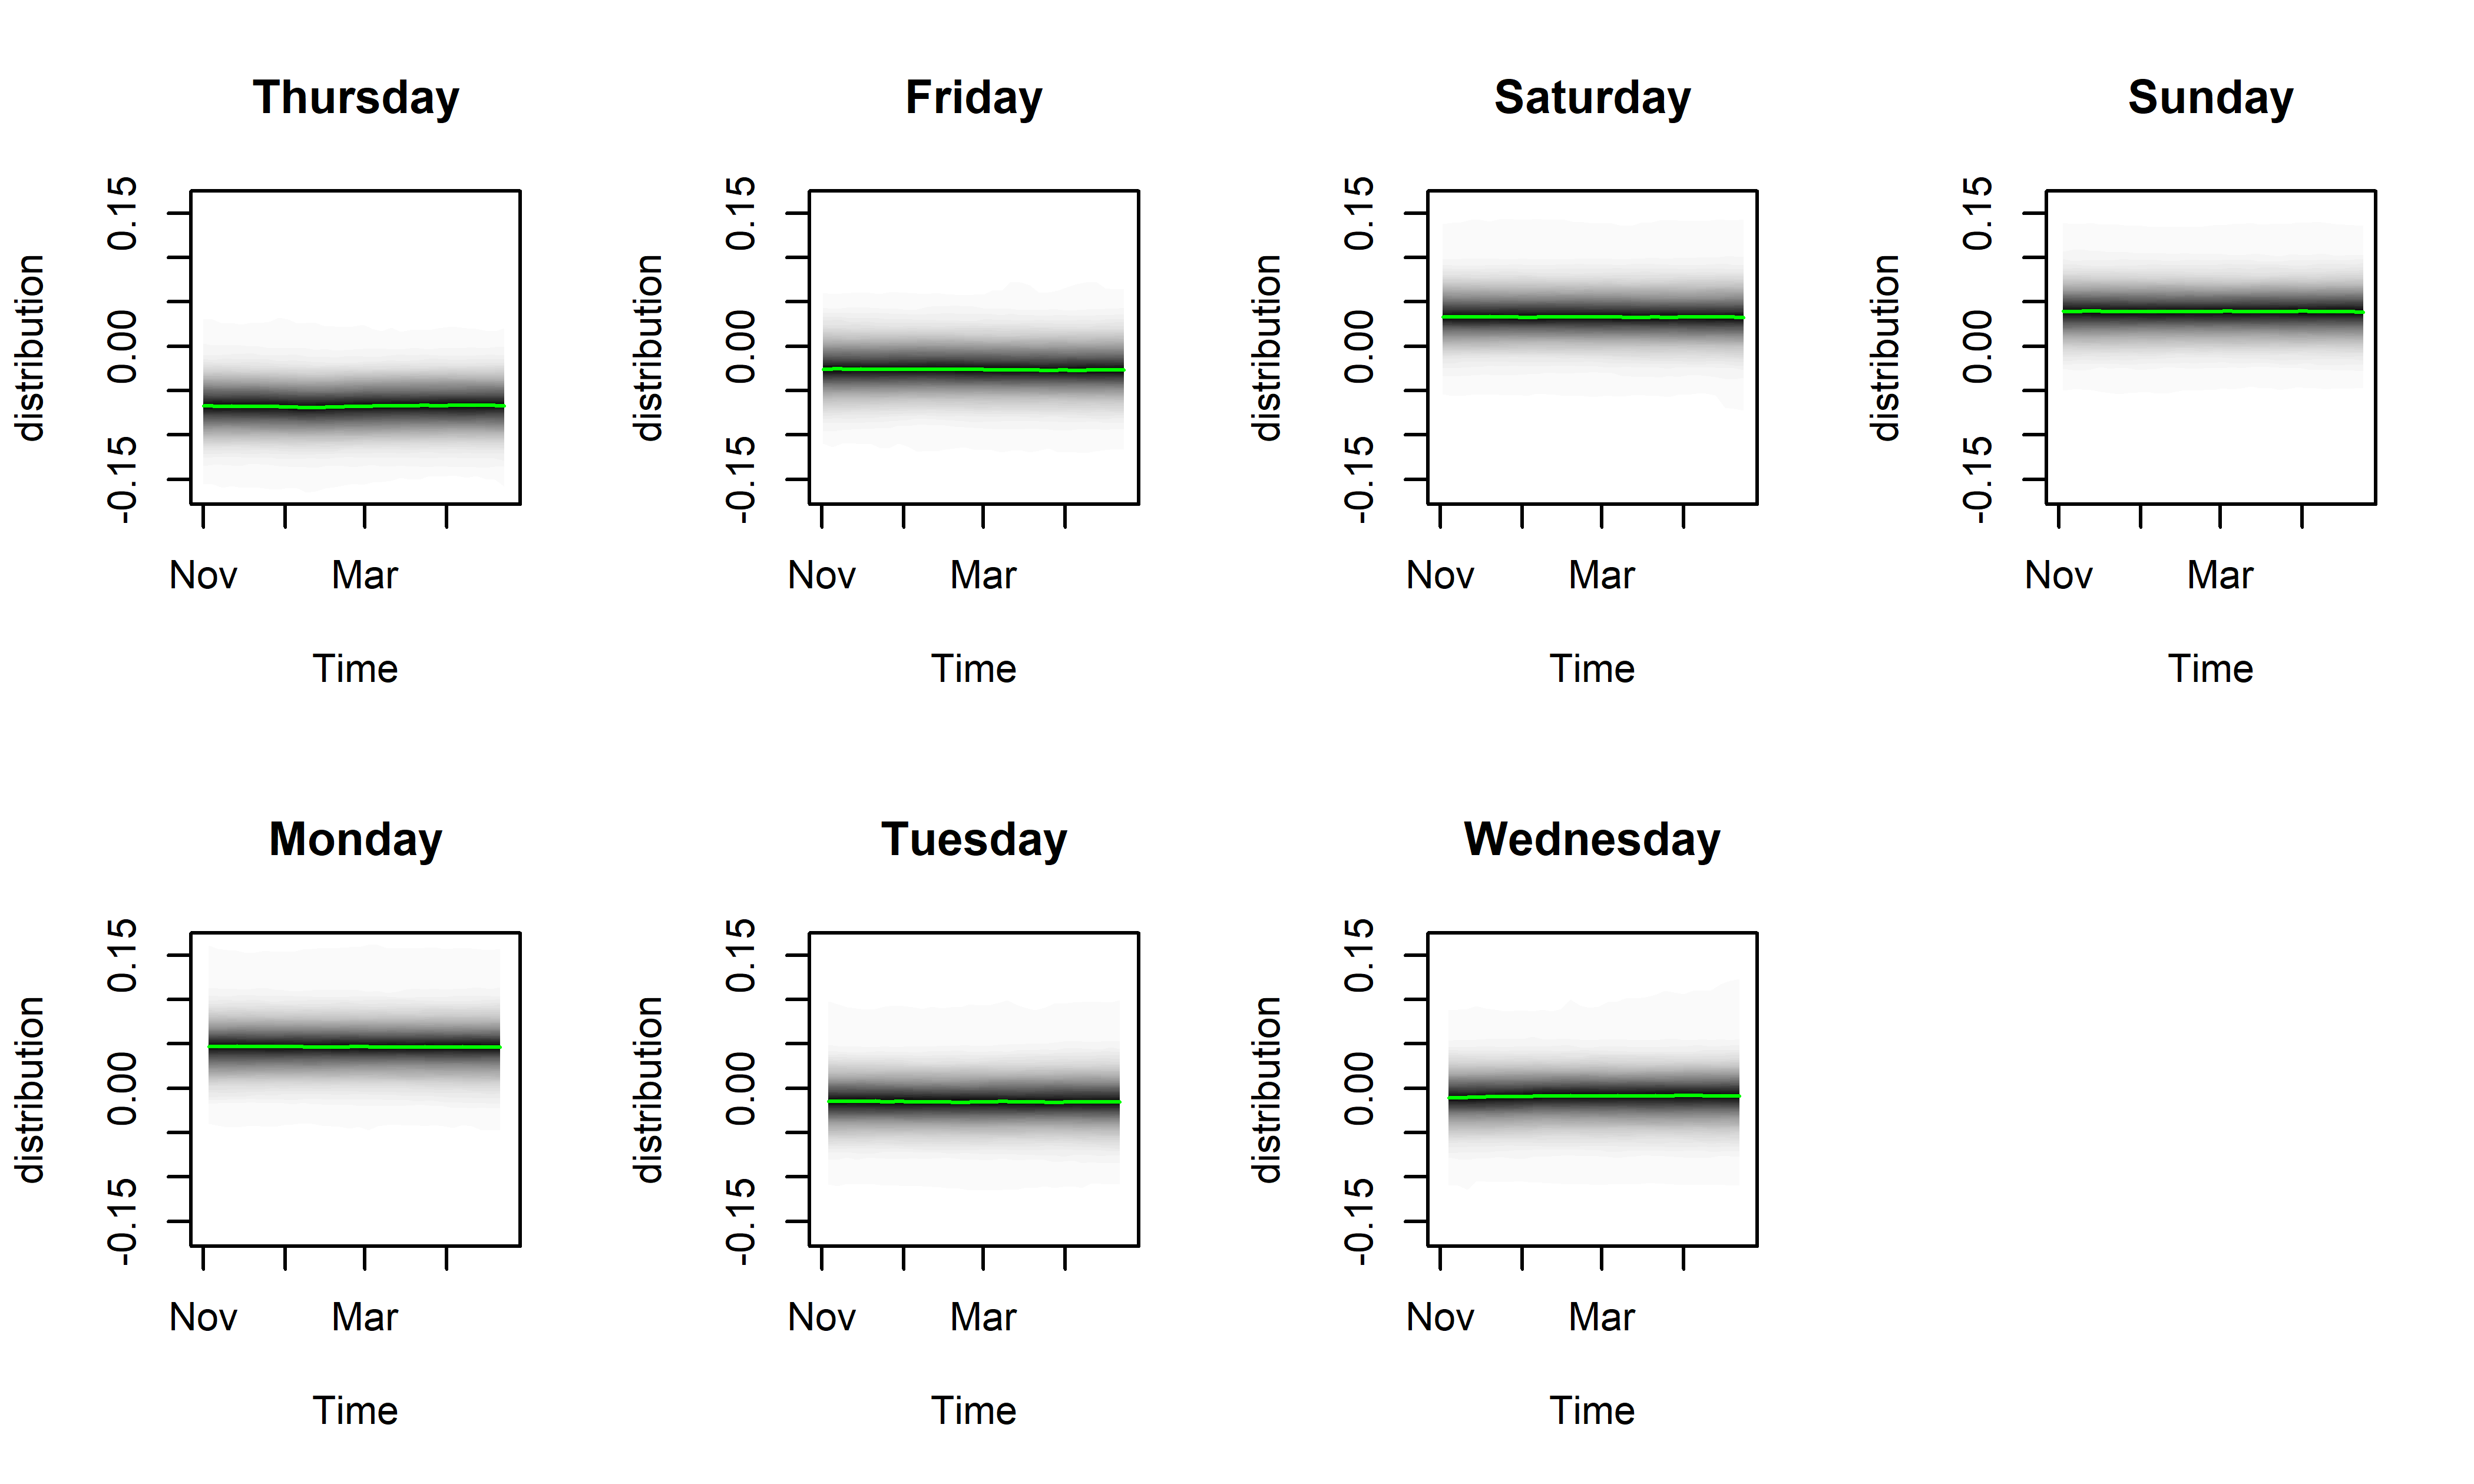 Апостериорные распределения эффектов дней недели, оцененные с помощью модели M19. Зеленые линии соответствуют медианам этих распределений